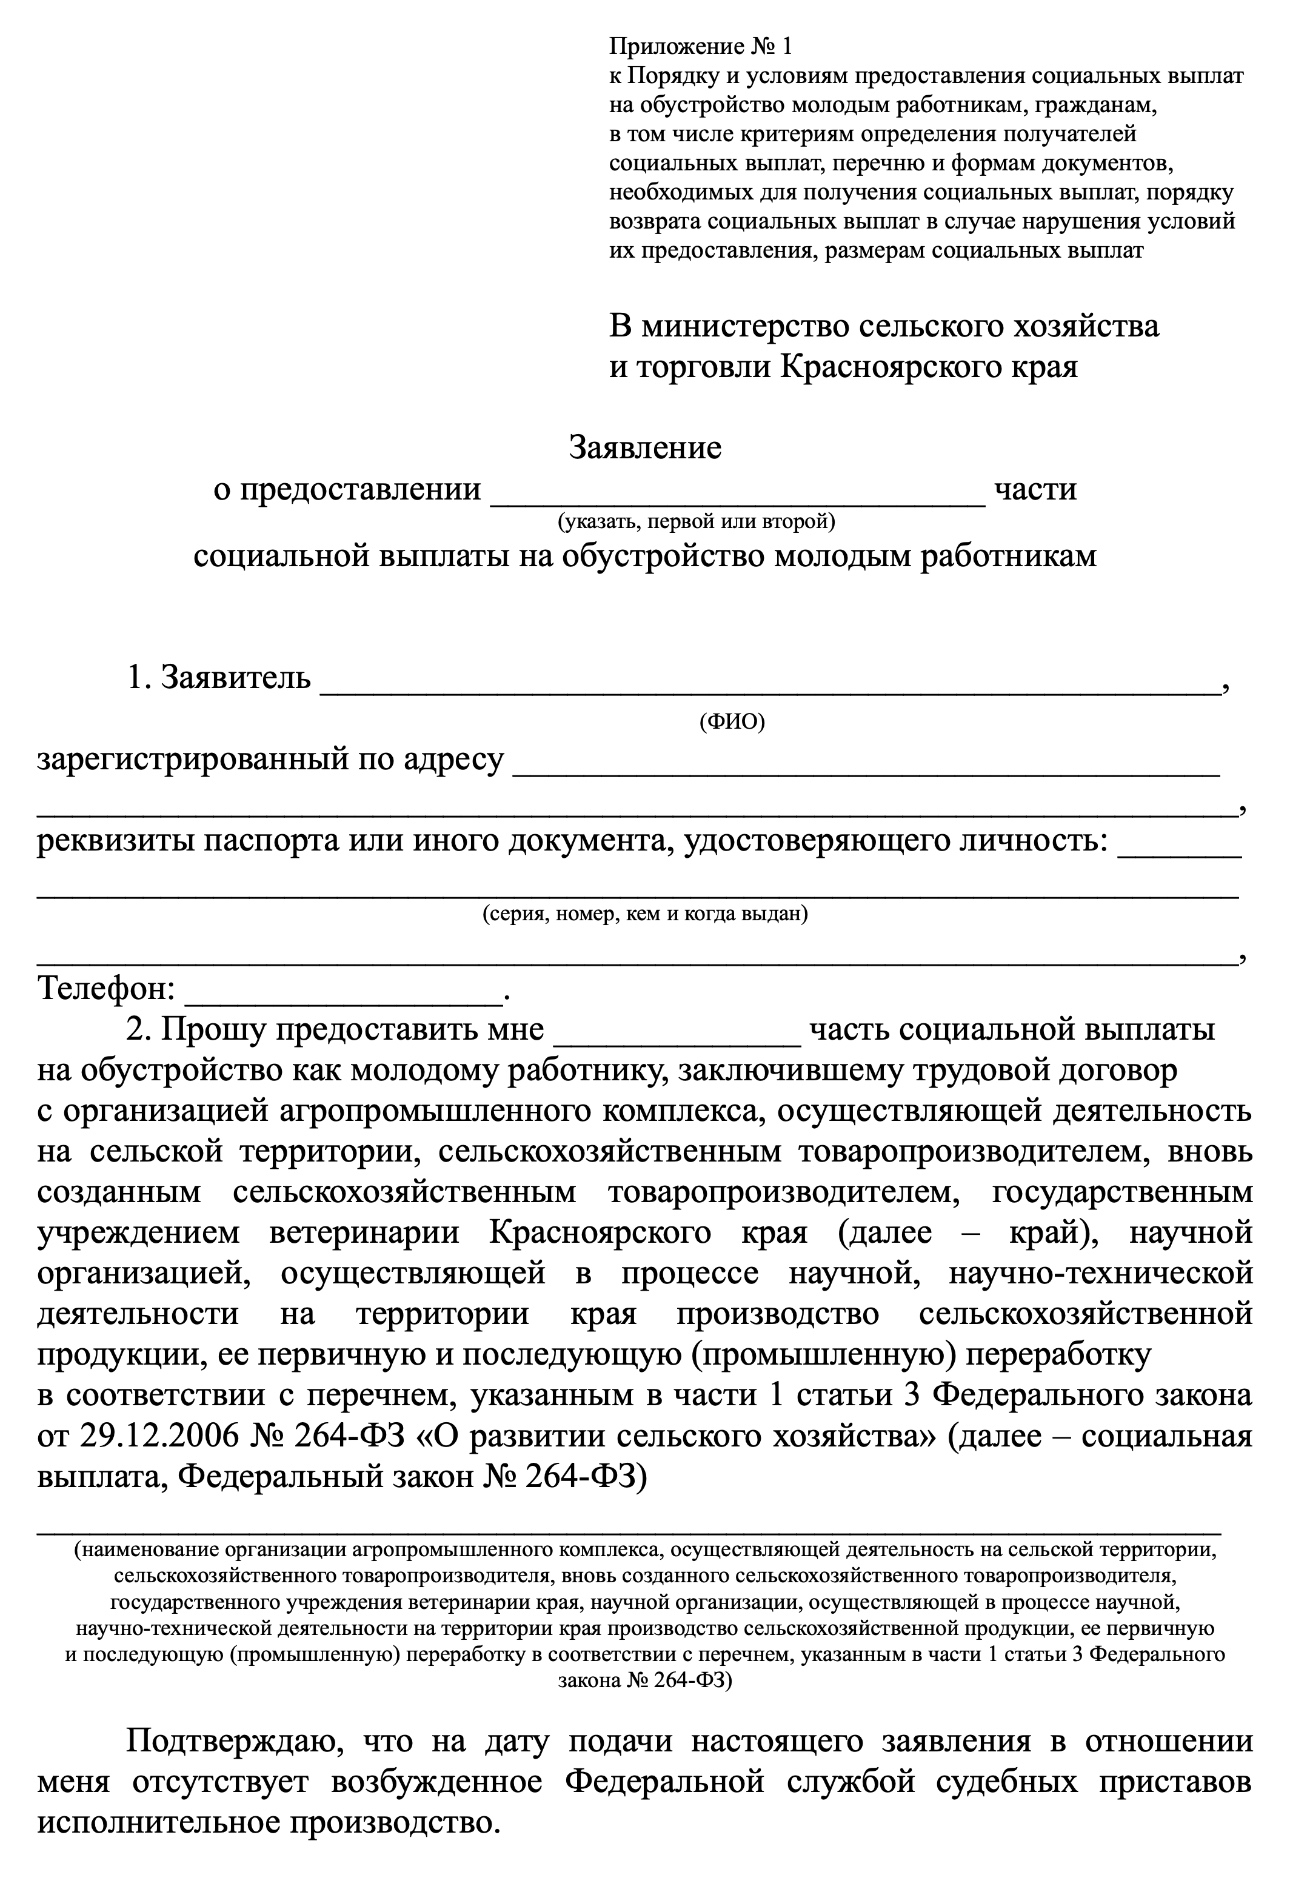 Вот пример заявления о предоставлении выплаты в Красноярском крае. Источник: krasagro.ru